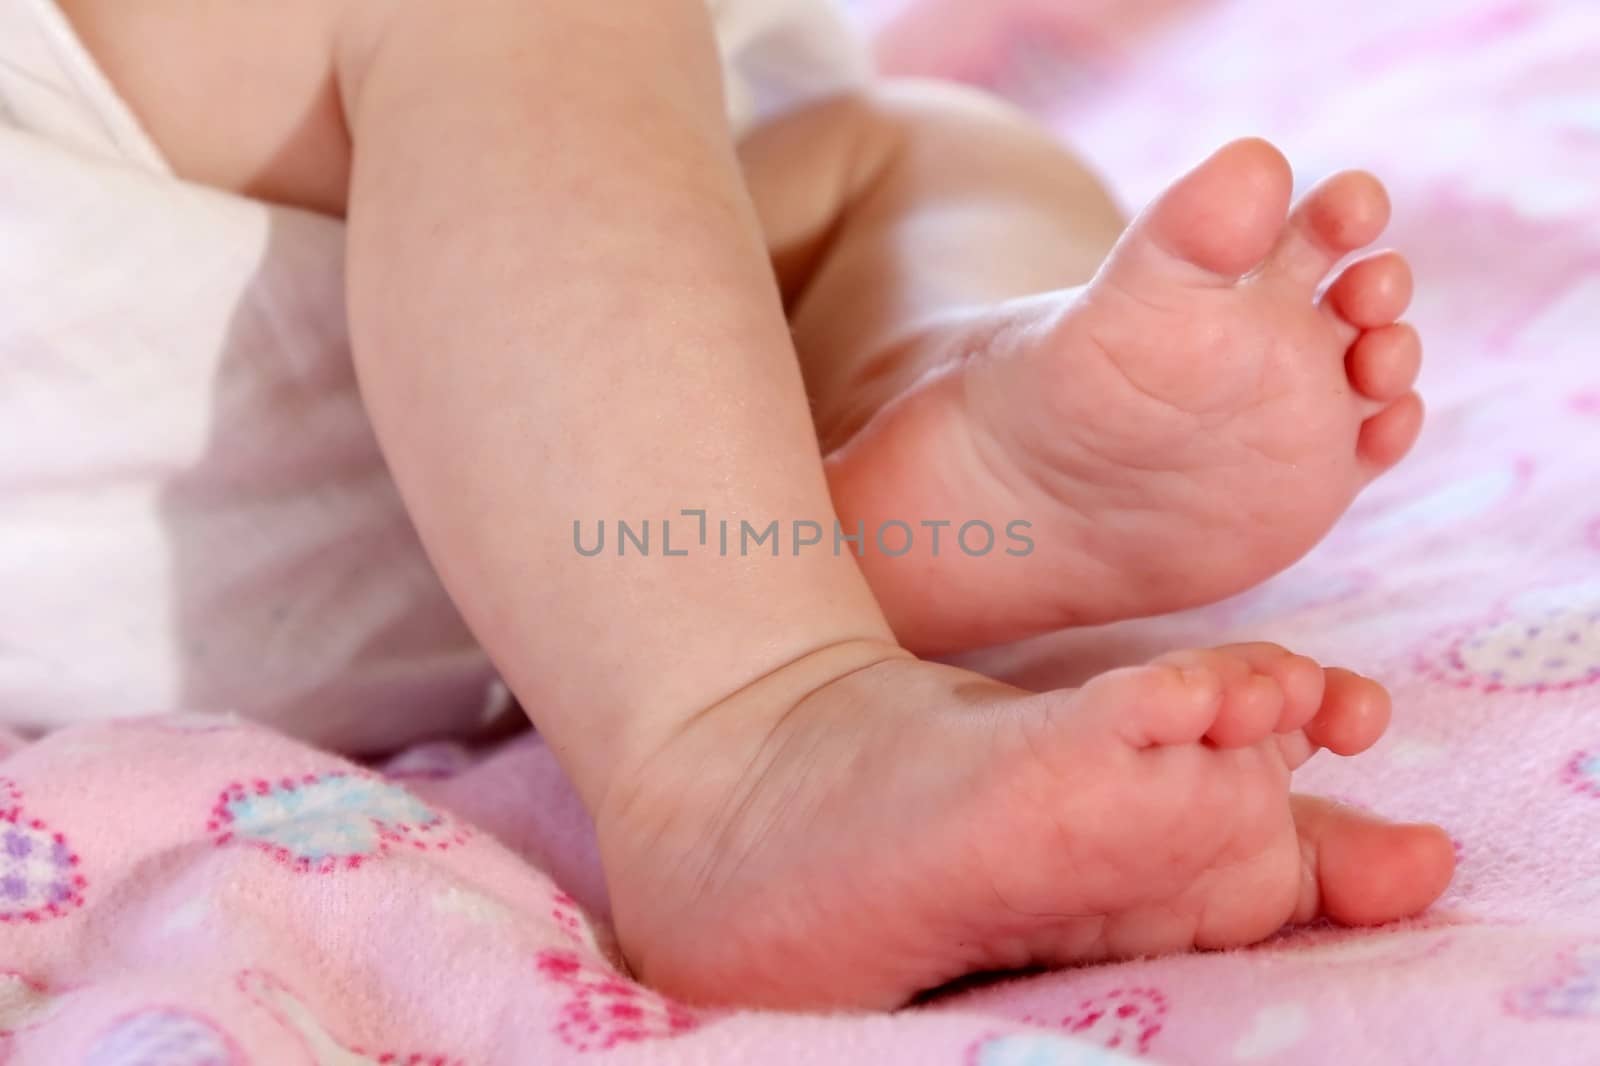 Baby's Cute Feet by fouroaks